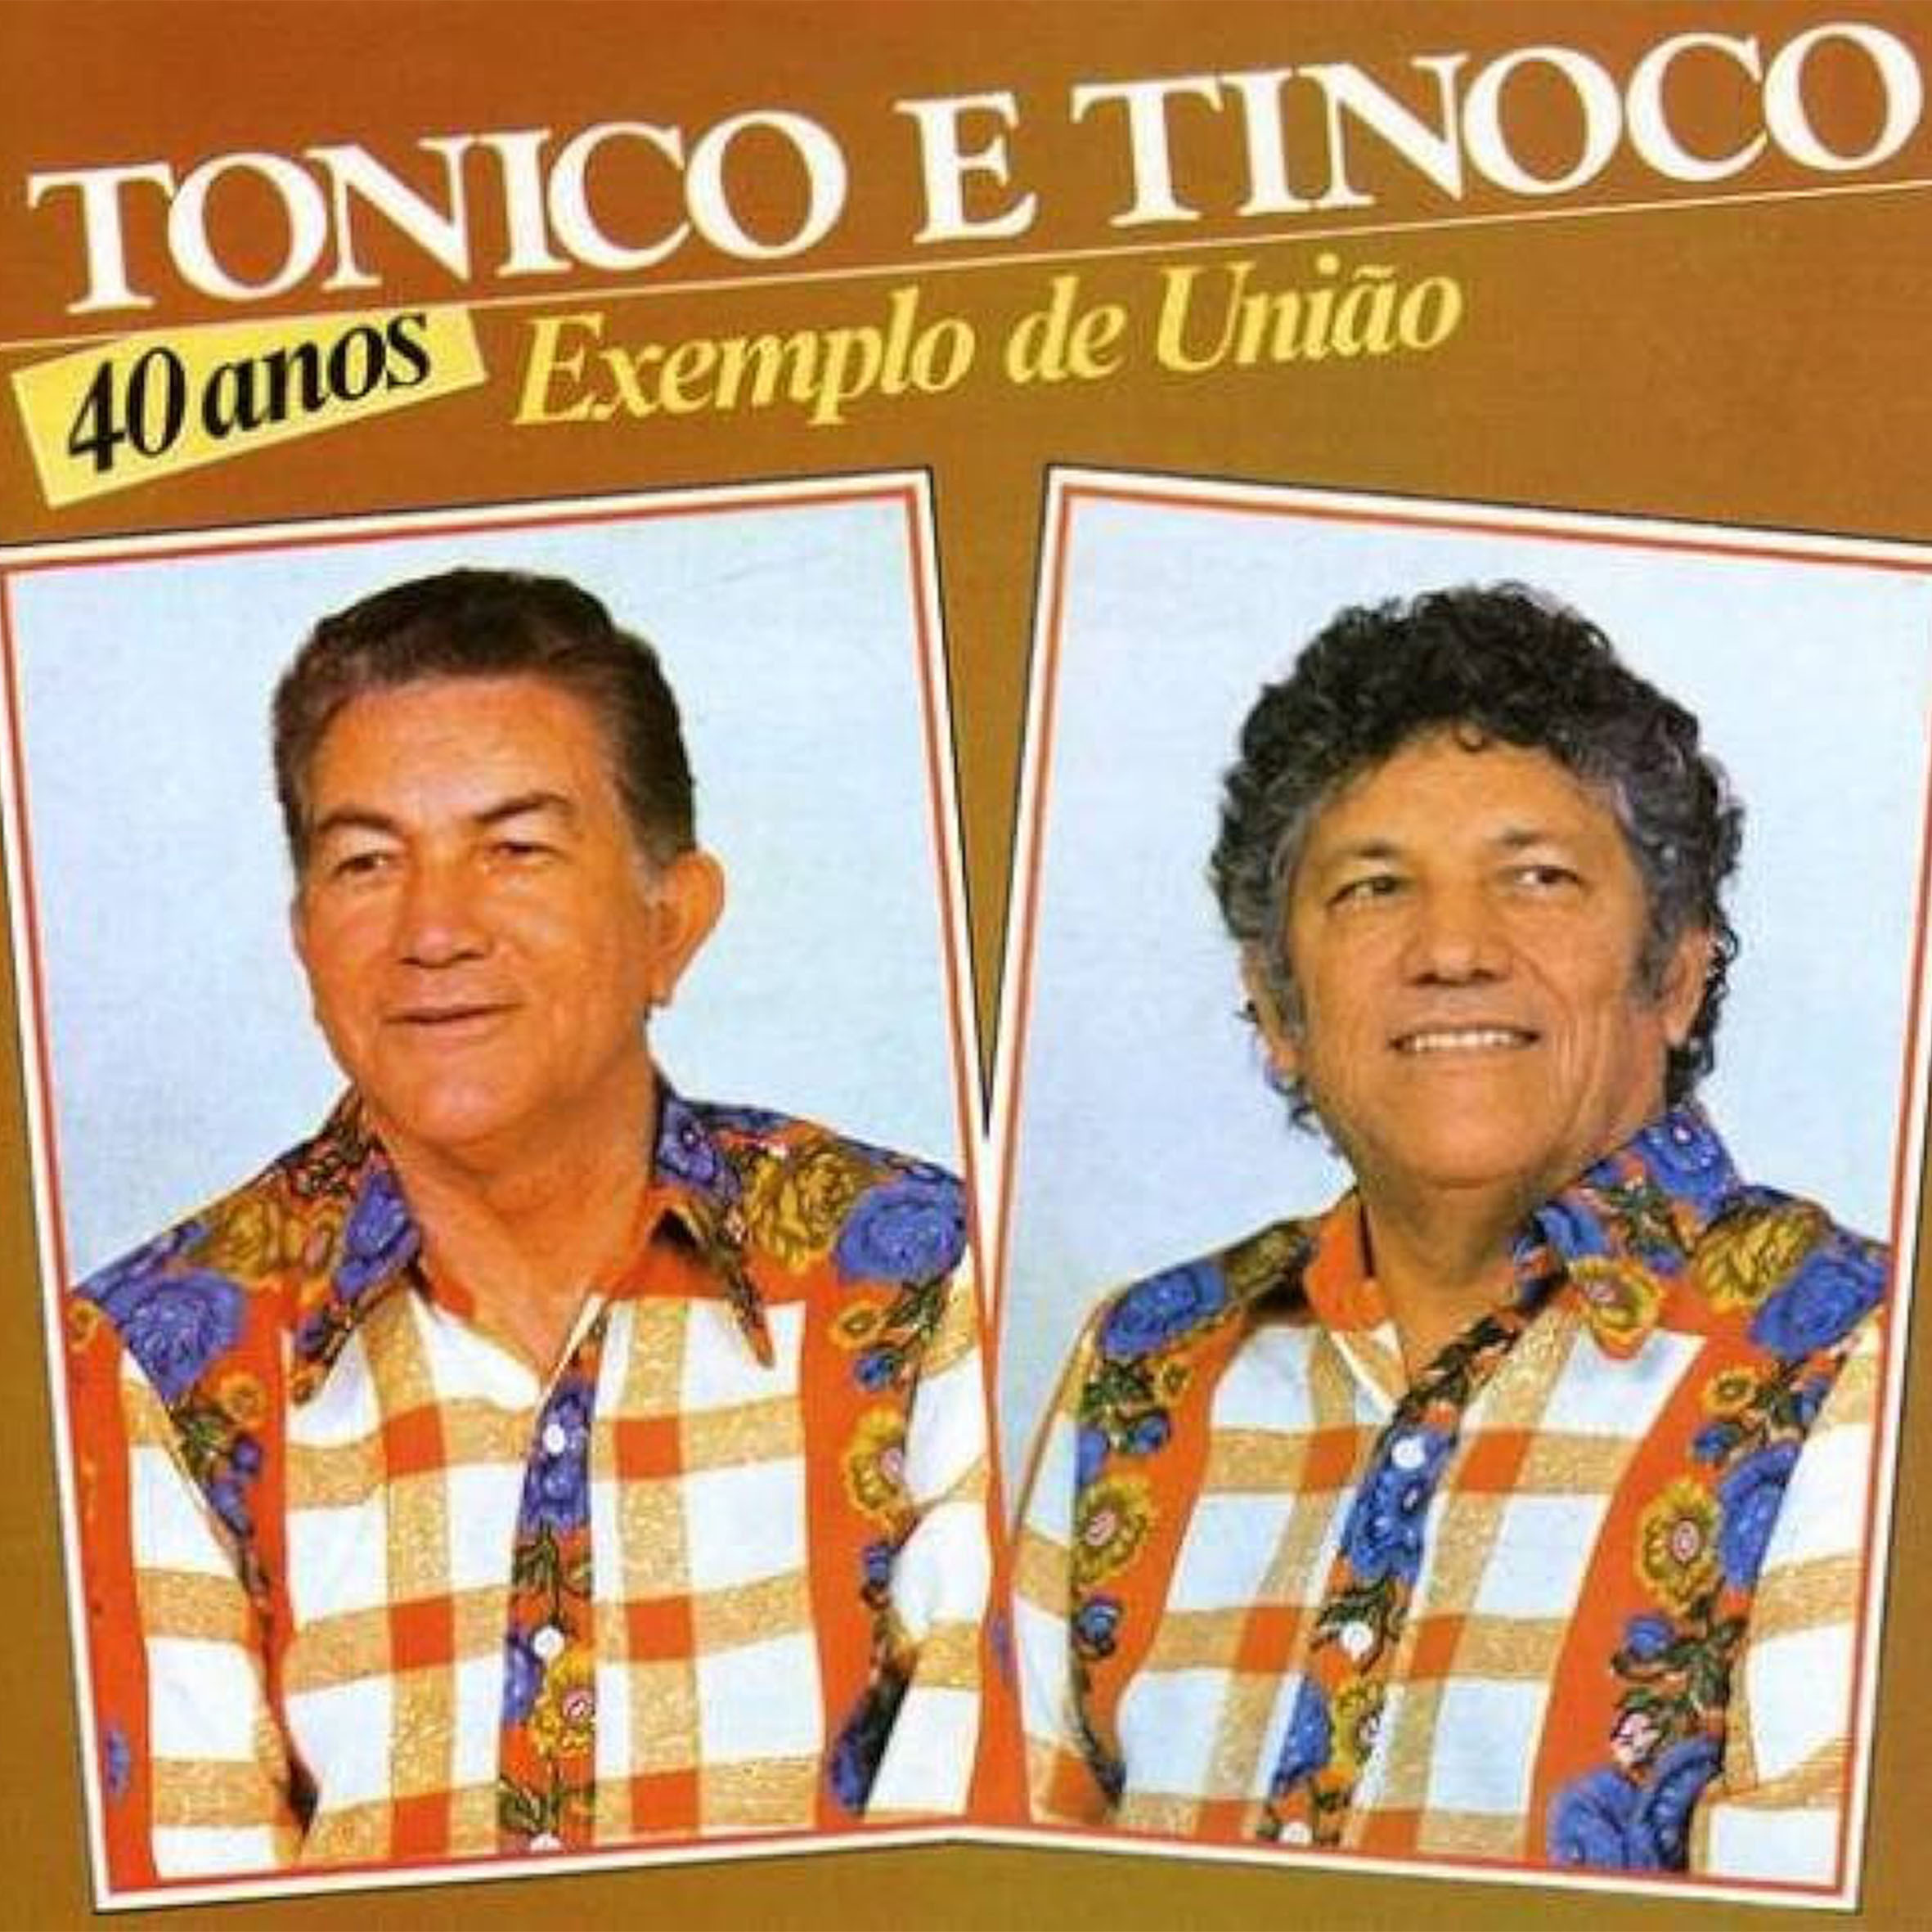 Vinil - Tonico E Tinoco - 40 Anos Exemplo de União